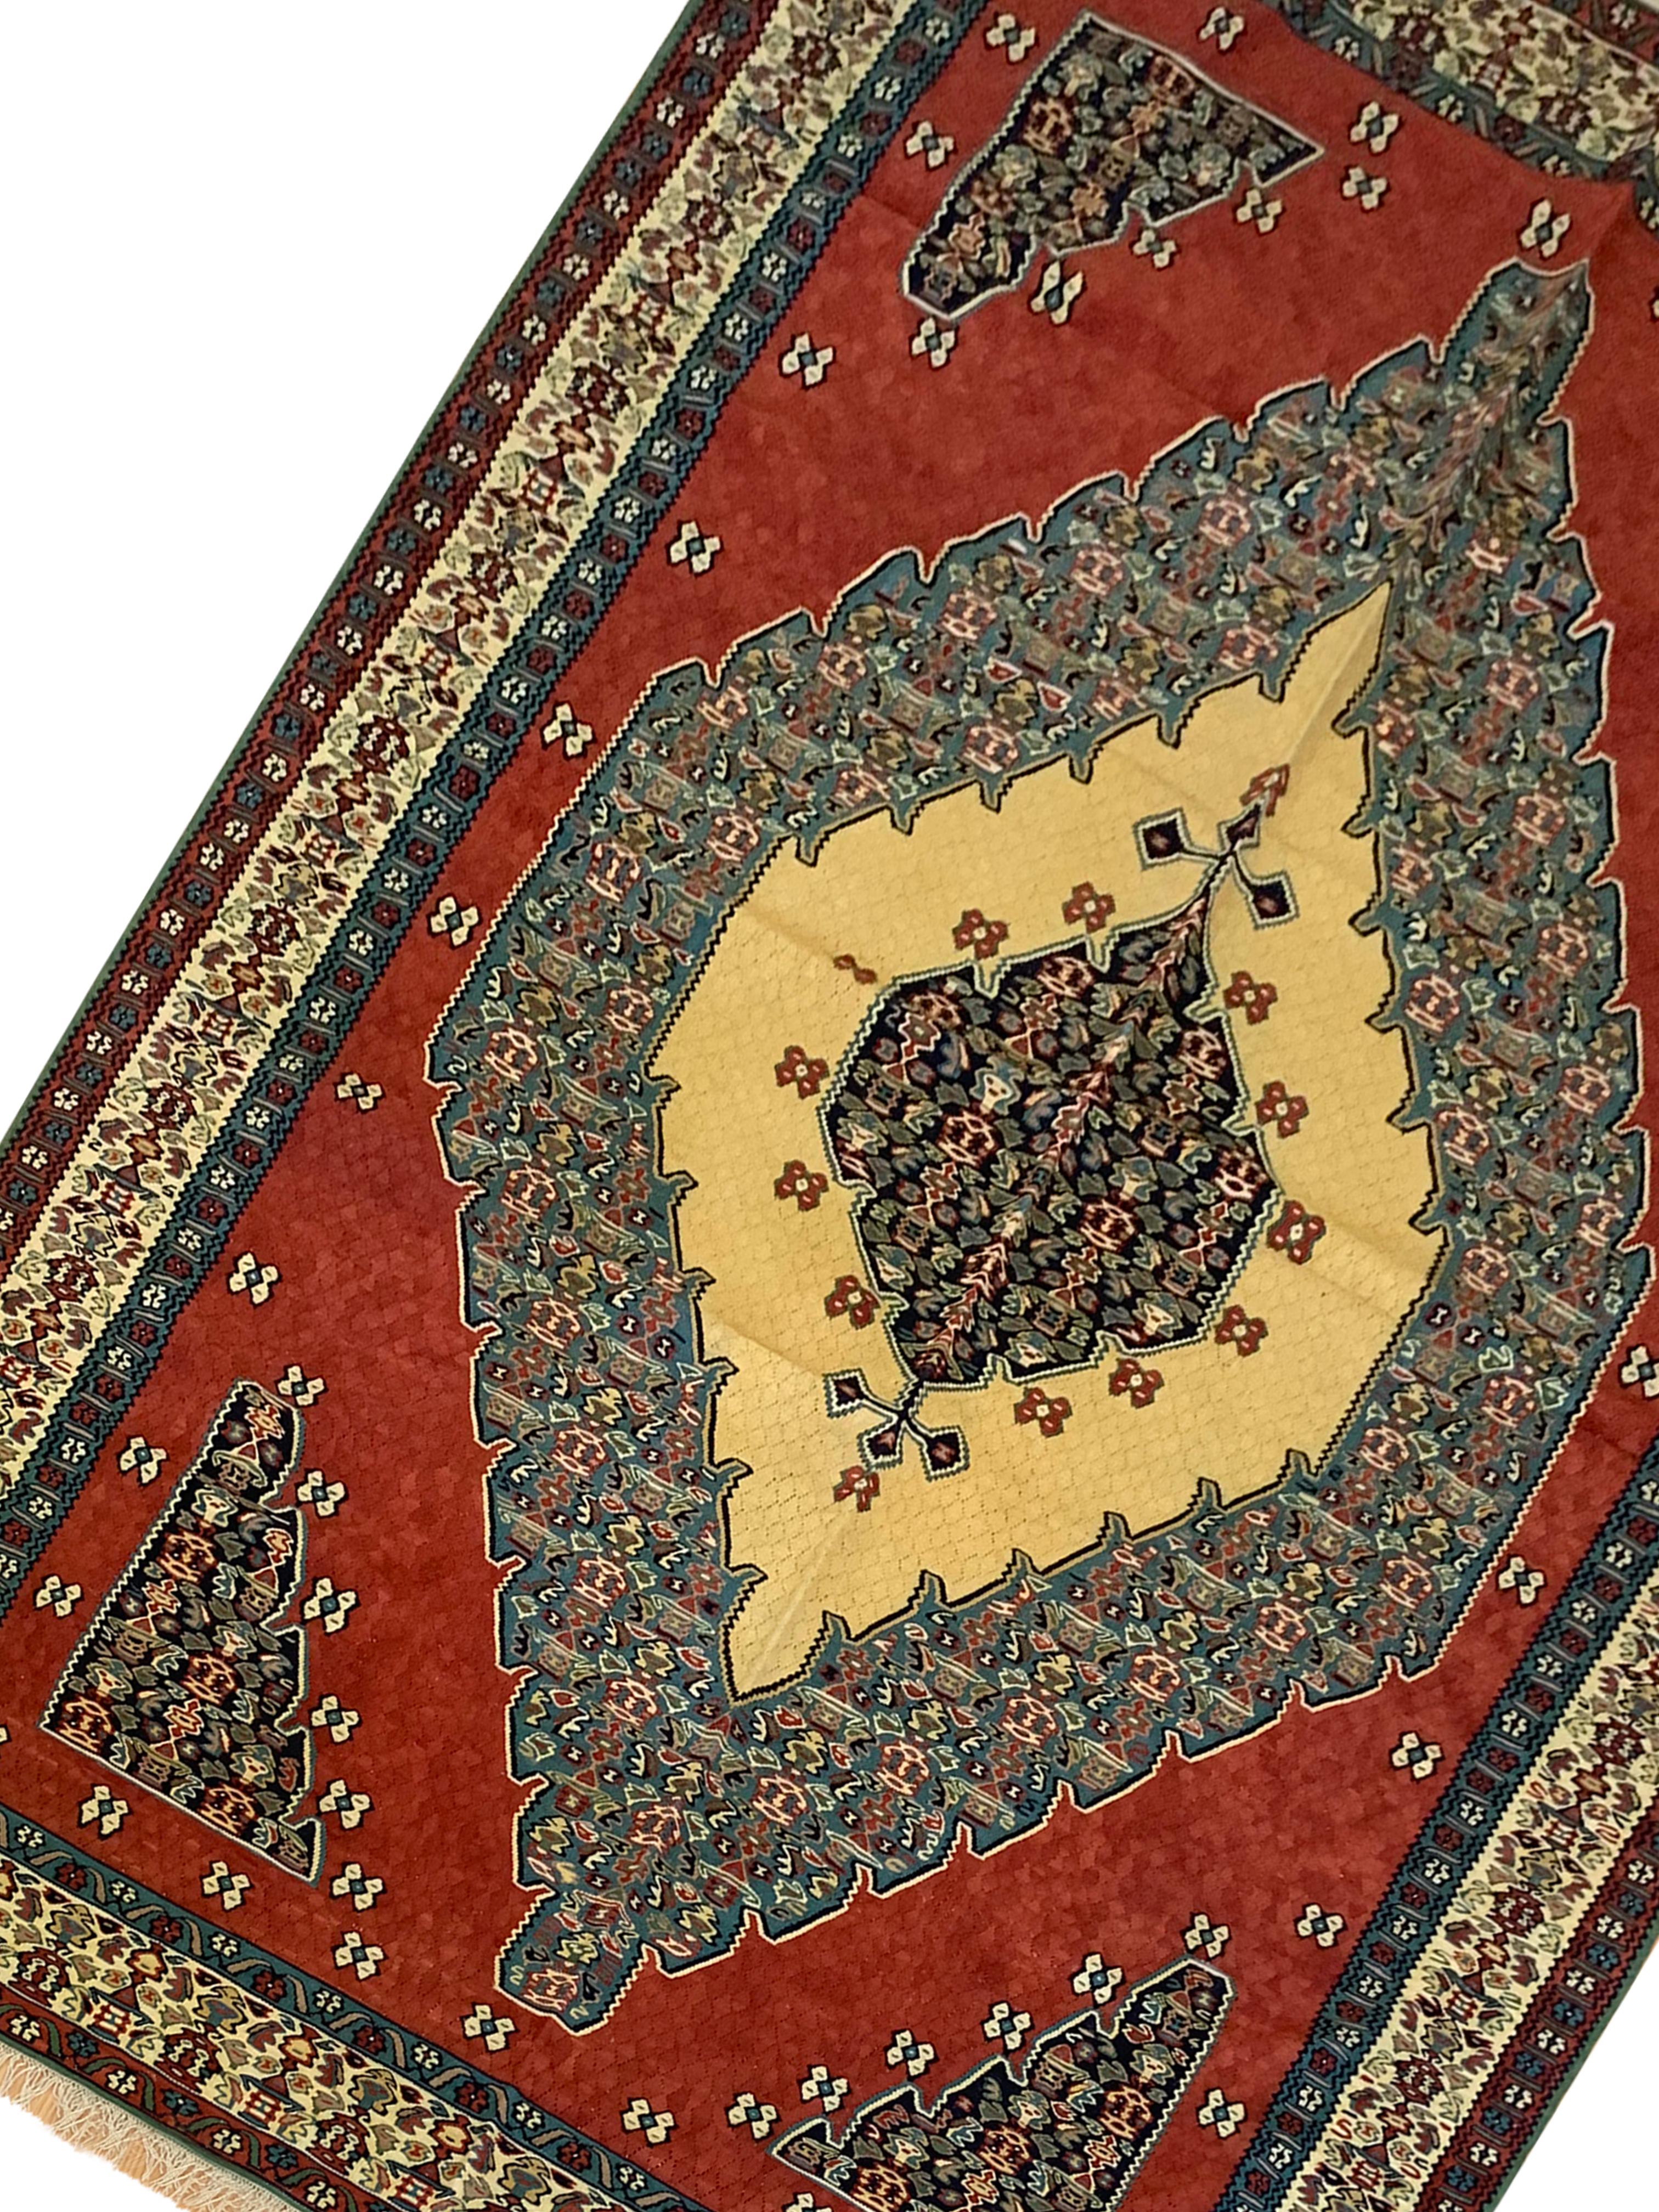 Dieser wunderschöne flachgewebte Teppich ist ein kurdischer Kelim, der in den frühen 2000er Jahren gewebt wurde, etwa 2010. Nur aus den besten organischen Materialien hergestellt. Das Design zeigt einen kräftigen roten Hintergrund mit einem großen